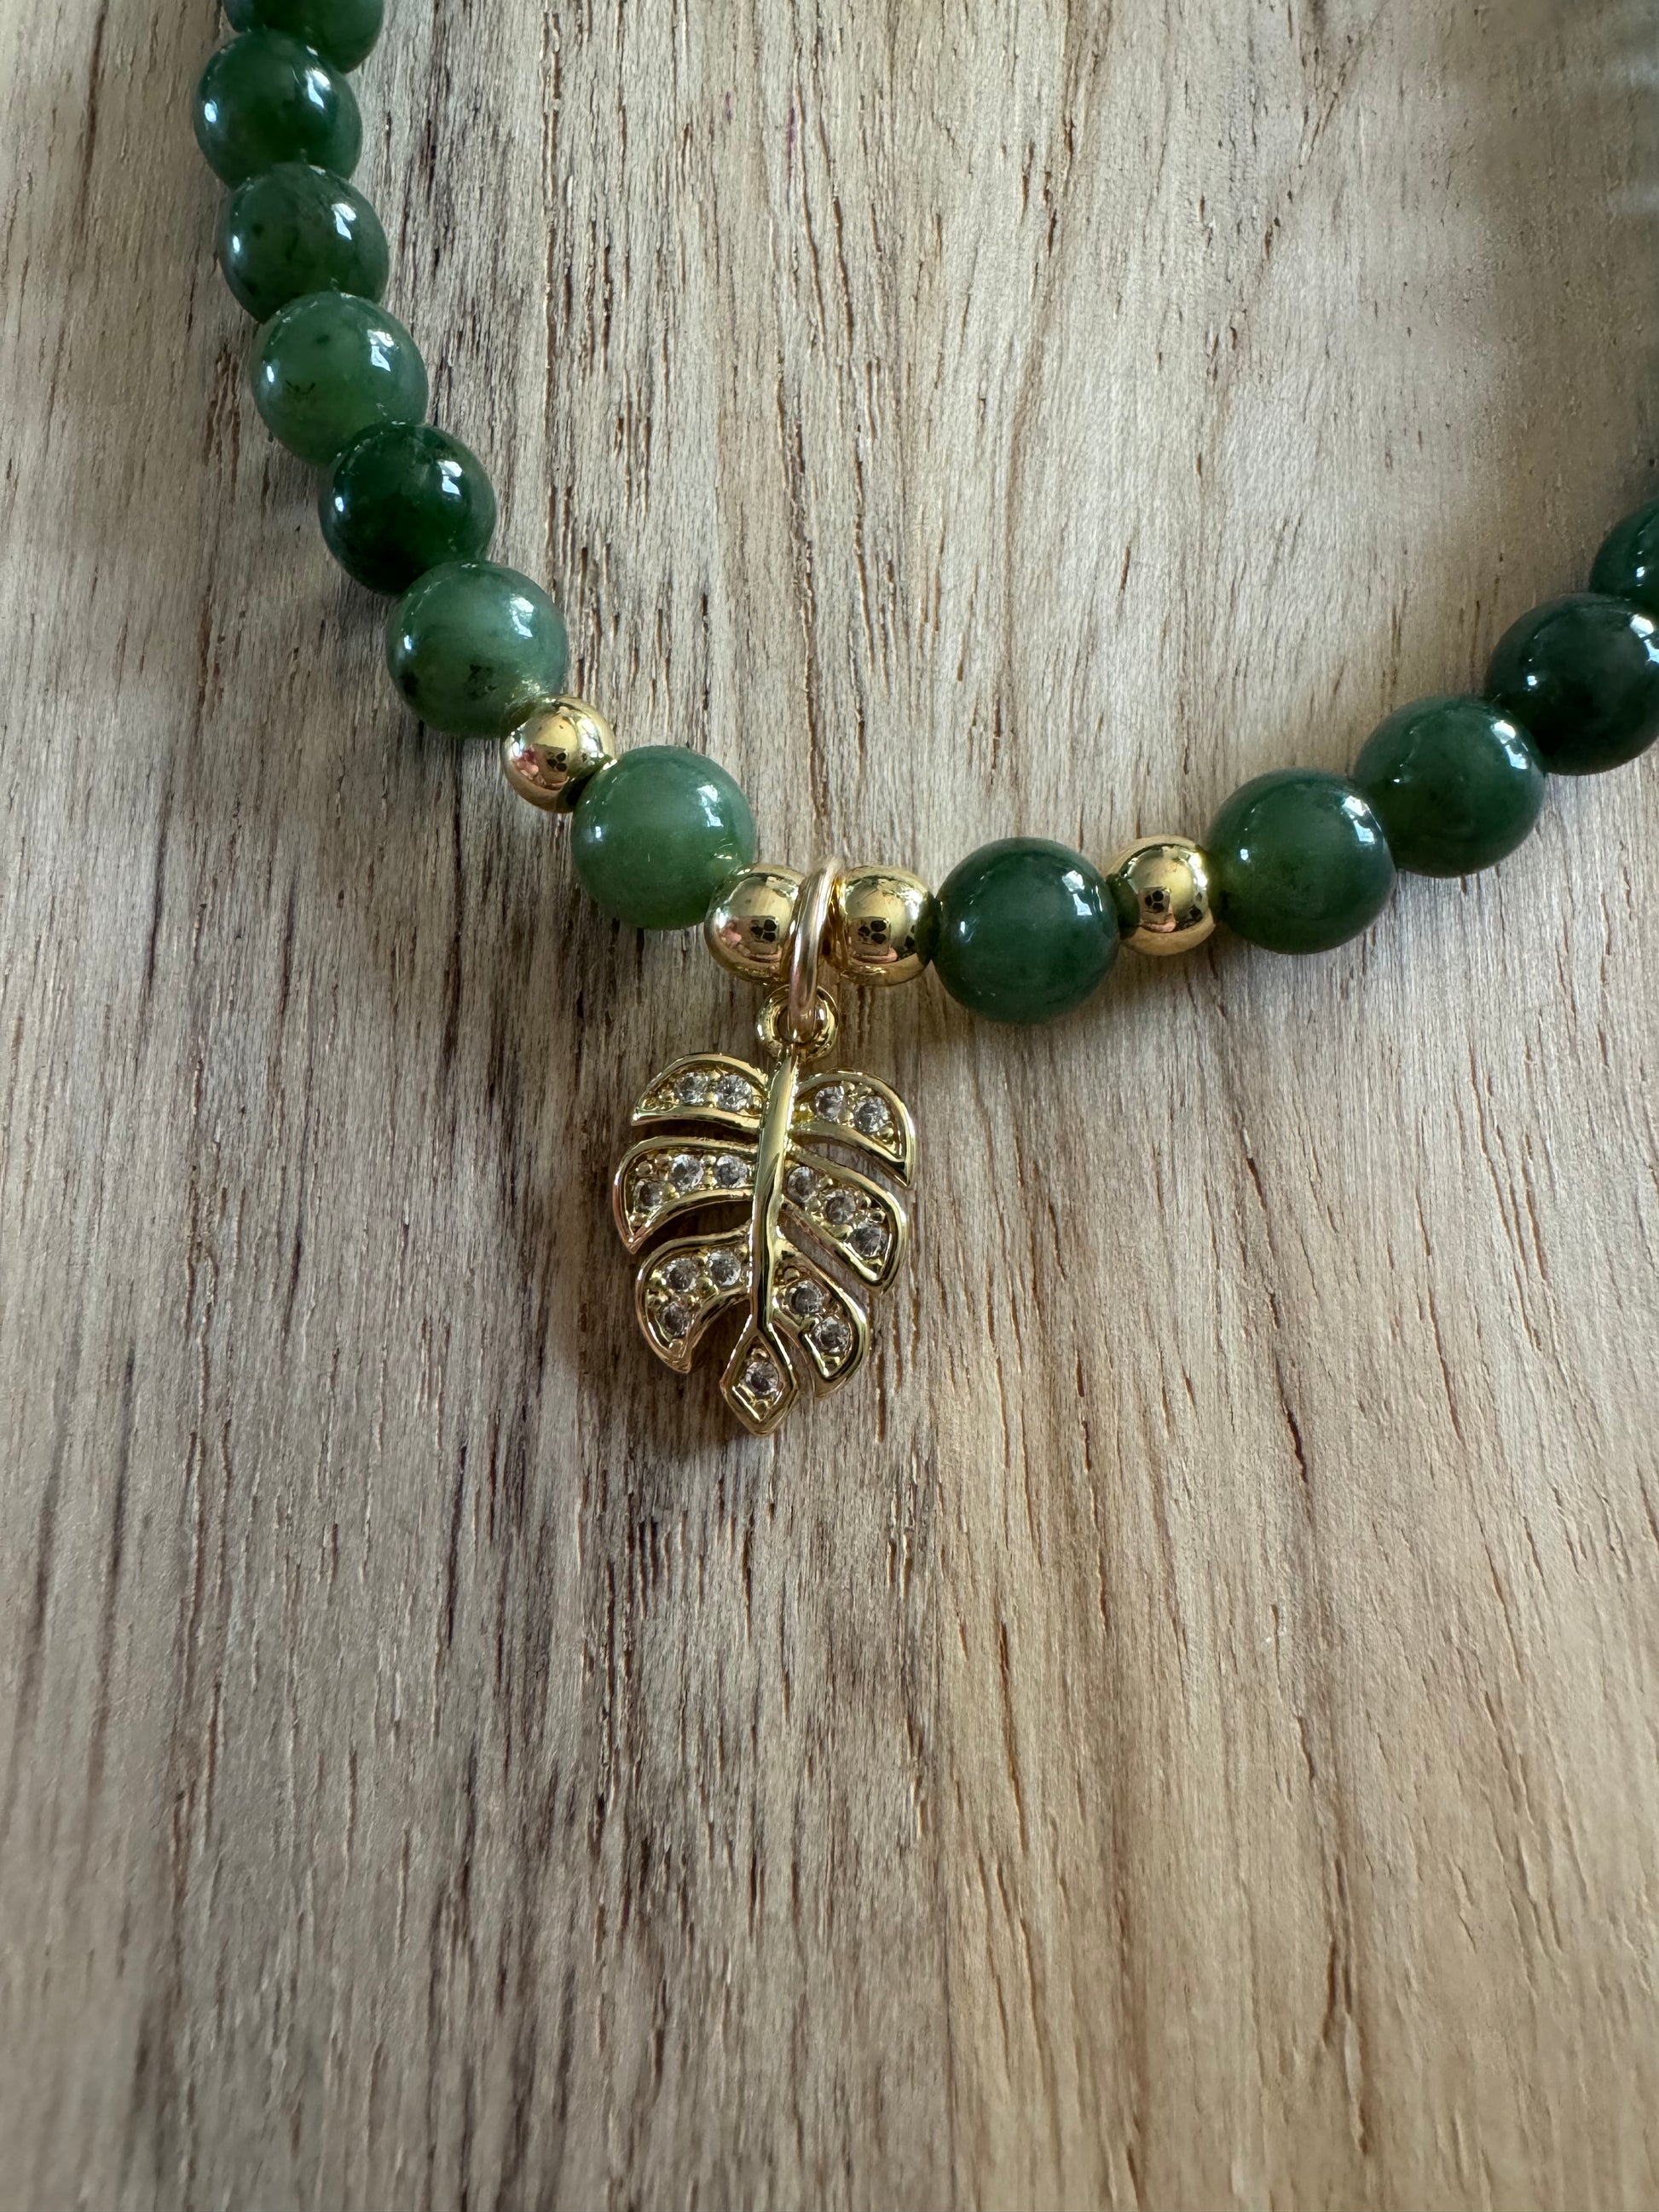 Dainty Nephrite Jade Stretch Bracelet with Gold Leaf Charm -My Urban Gems